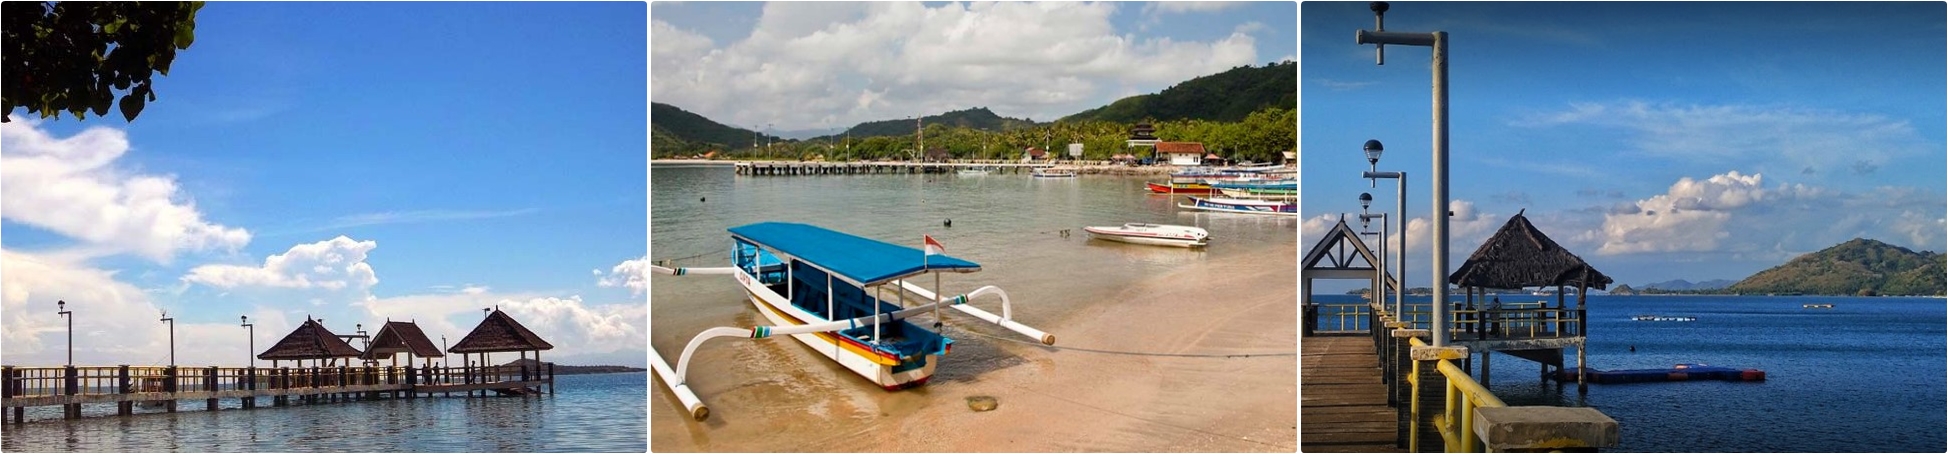 Paket Wisata Gili Nanggu - Pelabuhan Tawun